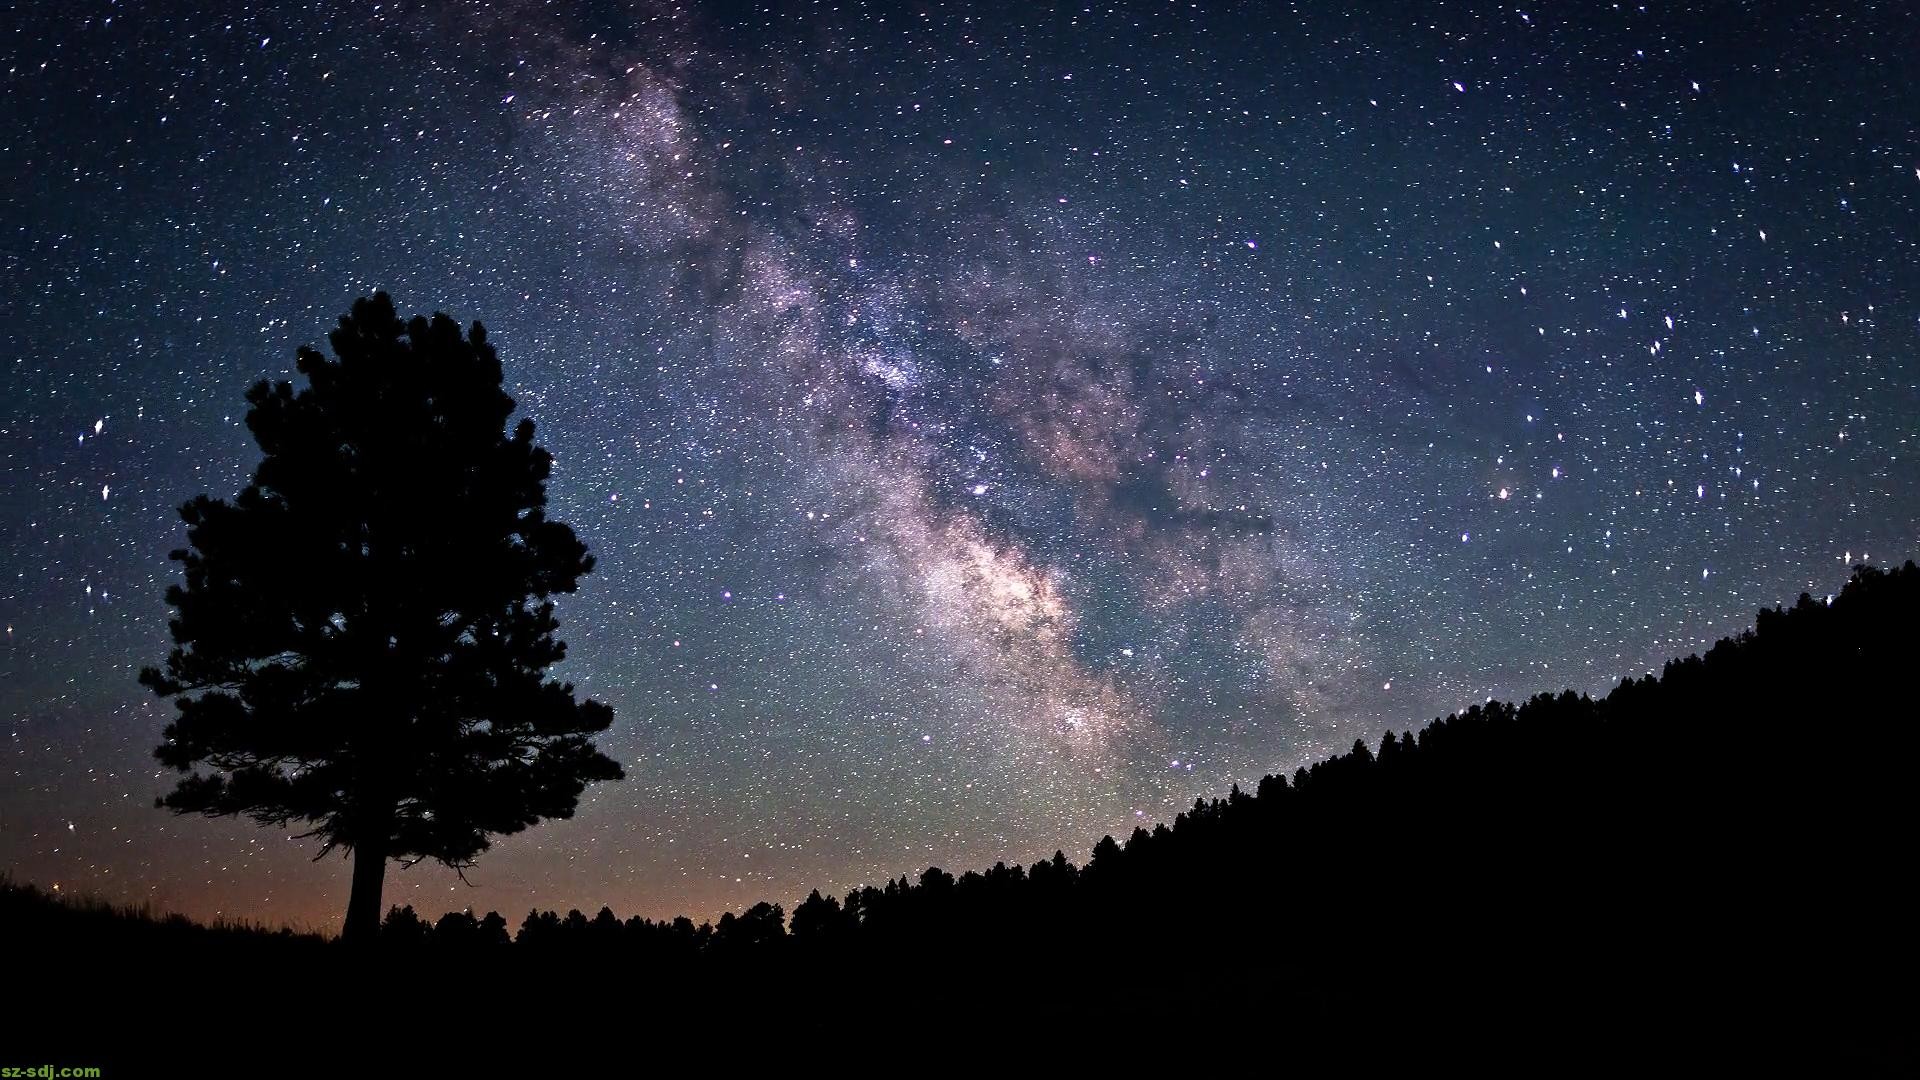 Hãy để hình nền bầu trời đêm của chúng tôi đưa bạn vào một chuyến du lịch thú vị vào không gian sao. Với những bức ảnh mang tính nghệ thuật, bạn sẽ được đắm mình trong không gian phiêu lưu mới mẻ. Hãy tạm biệt những chuyến đi thông thường và chào đón những trải nghiệm phi thường với chúng tôi!